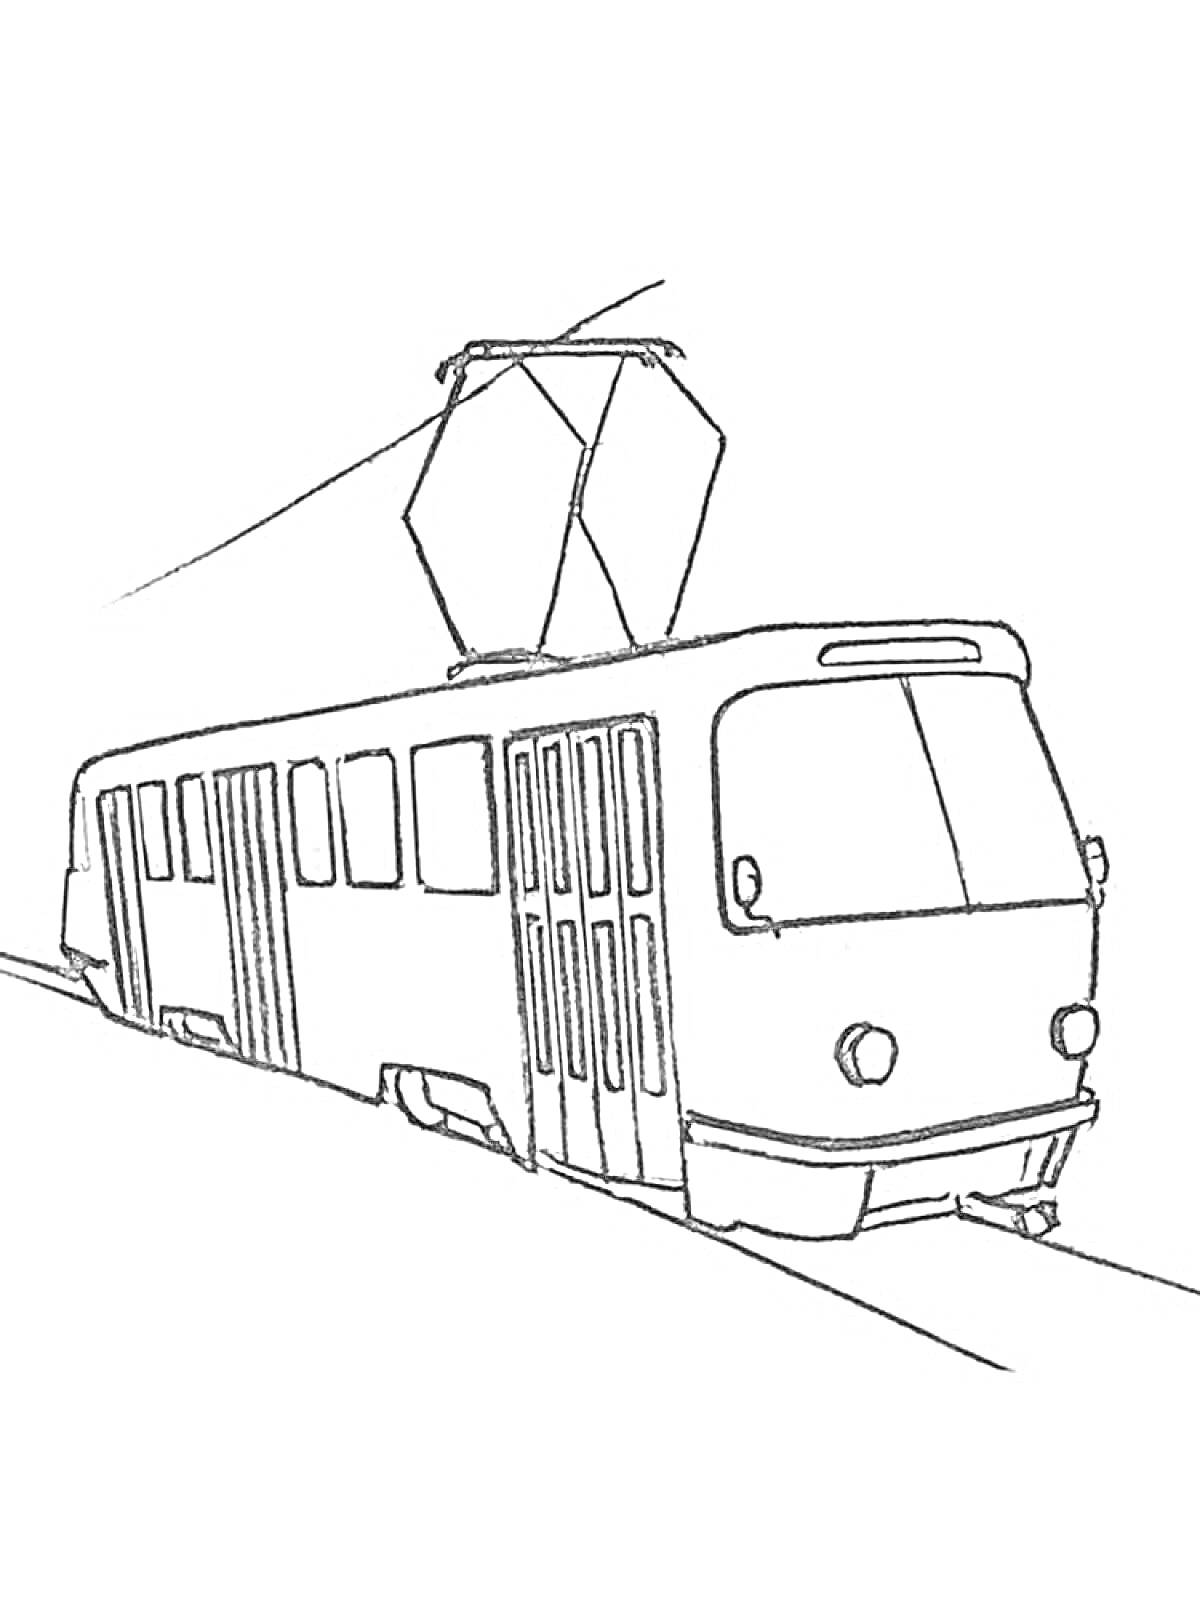 Раскраска Трамвай с двойной дверью на рельсах